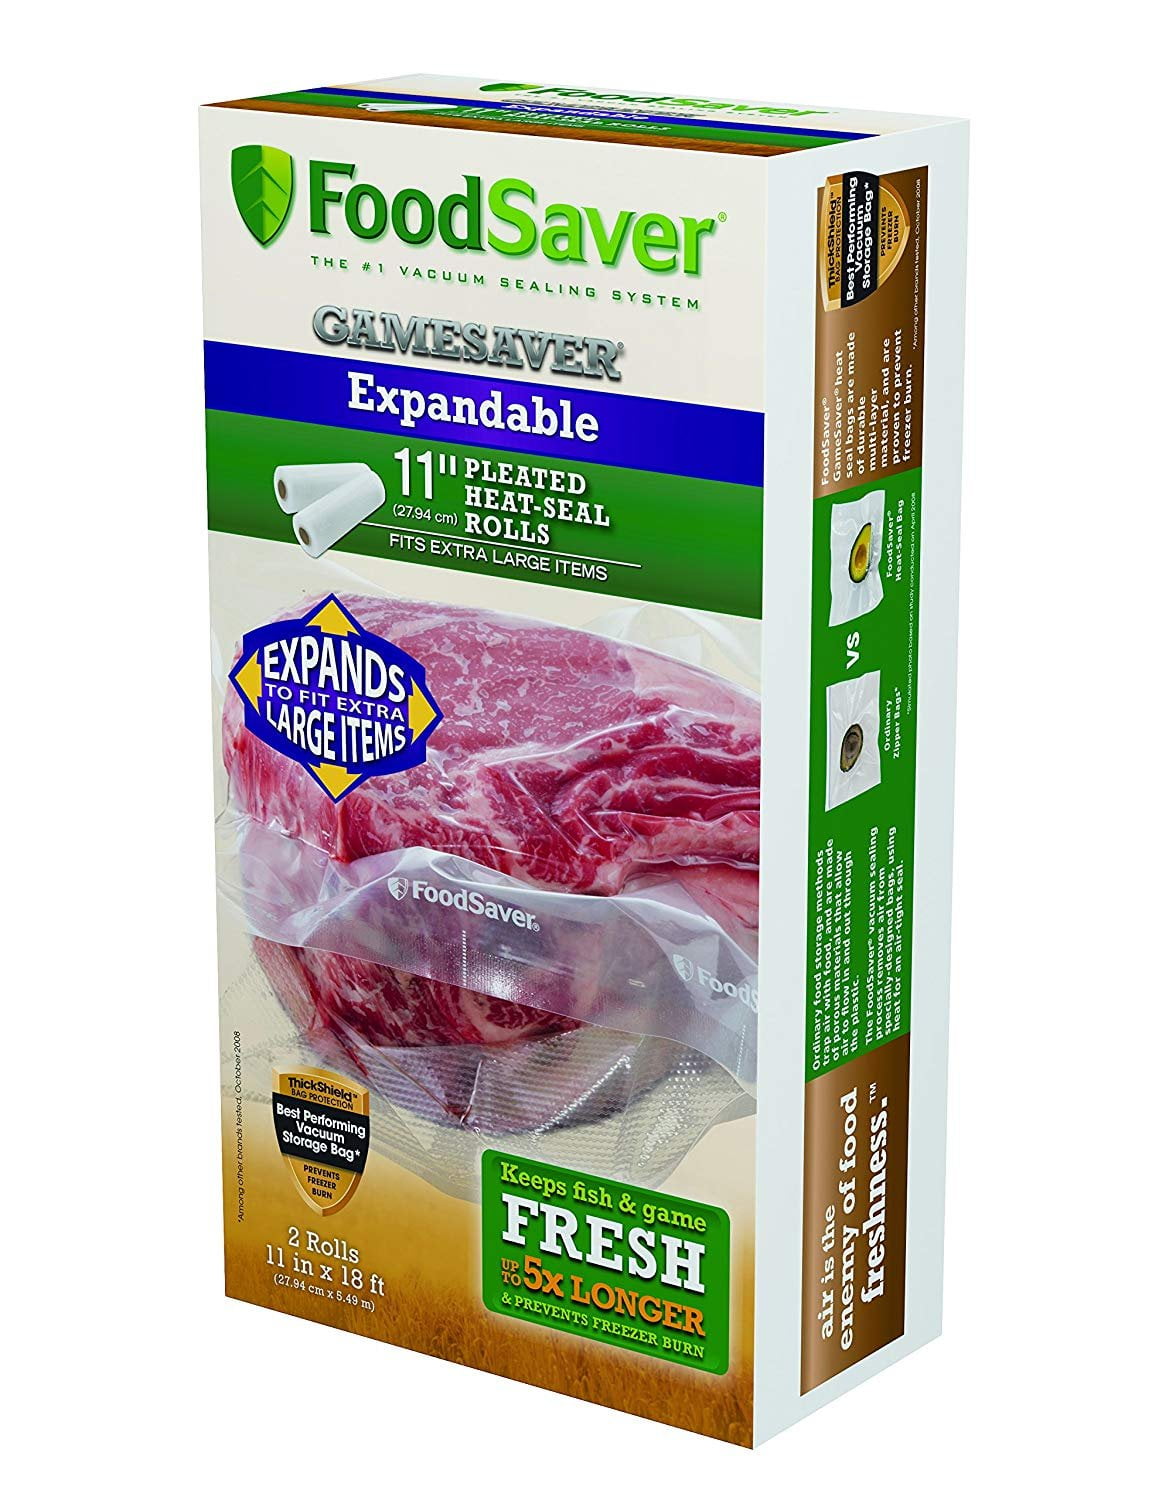 Foodsaver 11 x 18' GameSaver Expandable Vacuum Bag Rolls, 2-Pack